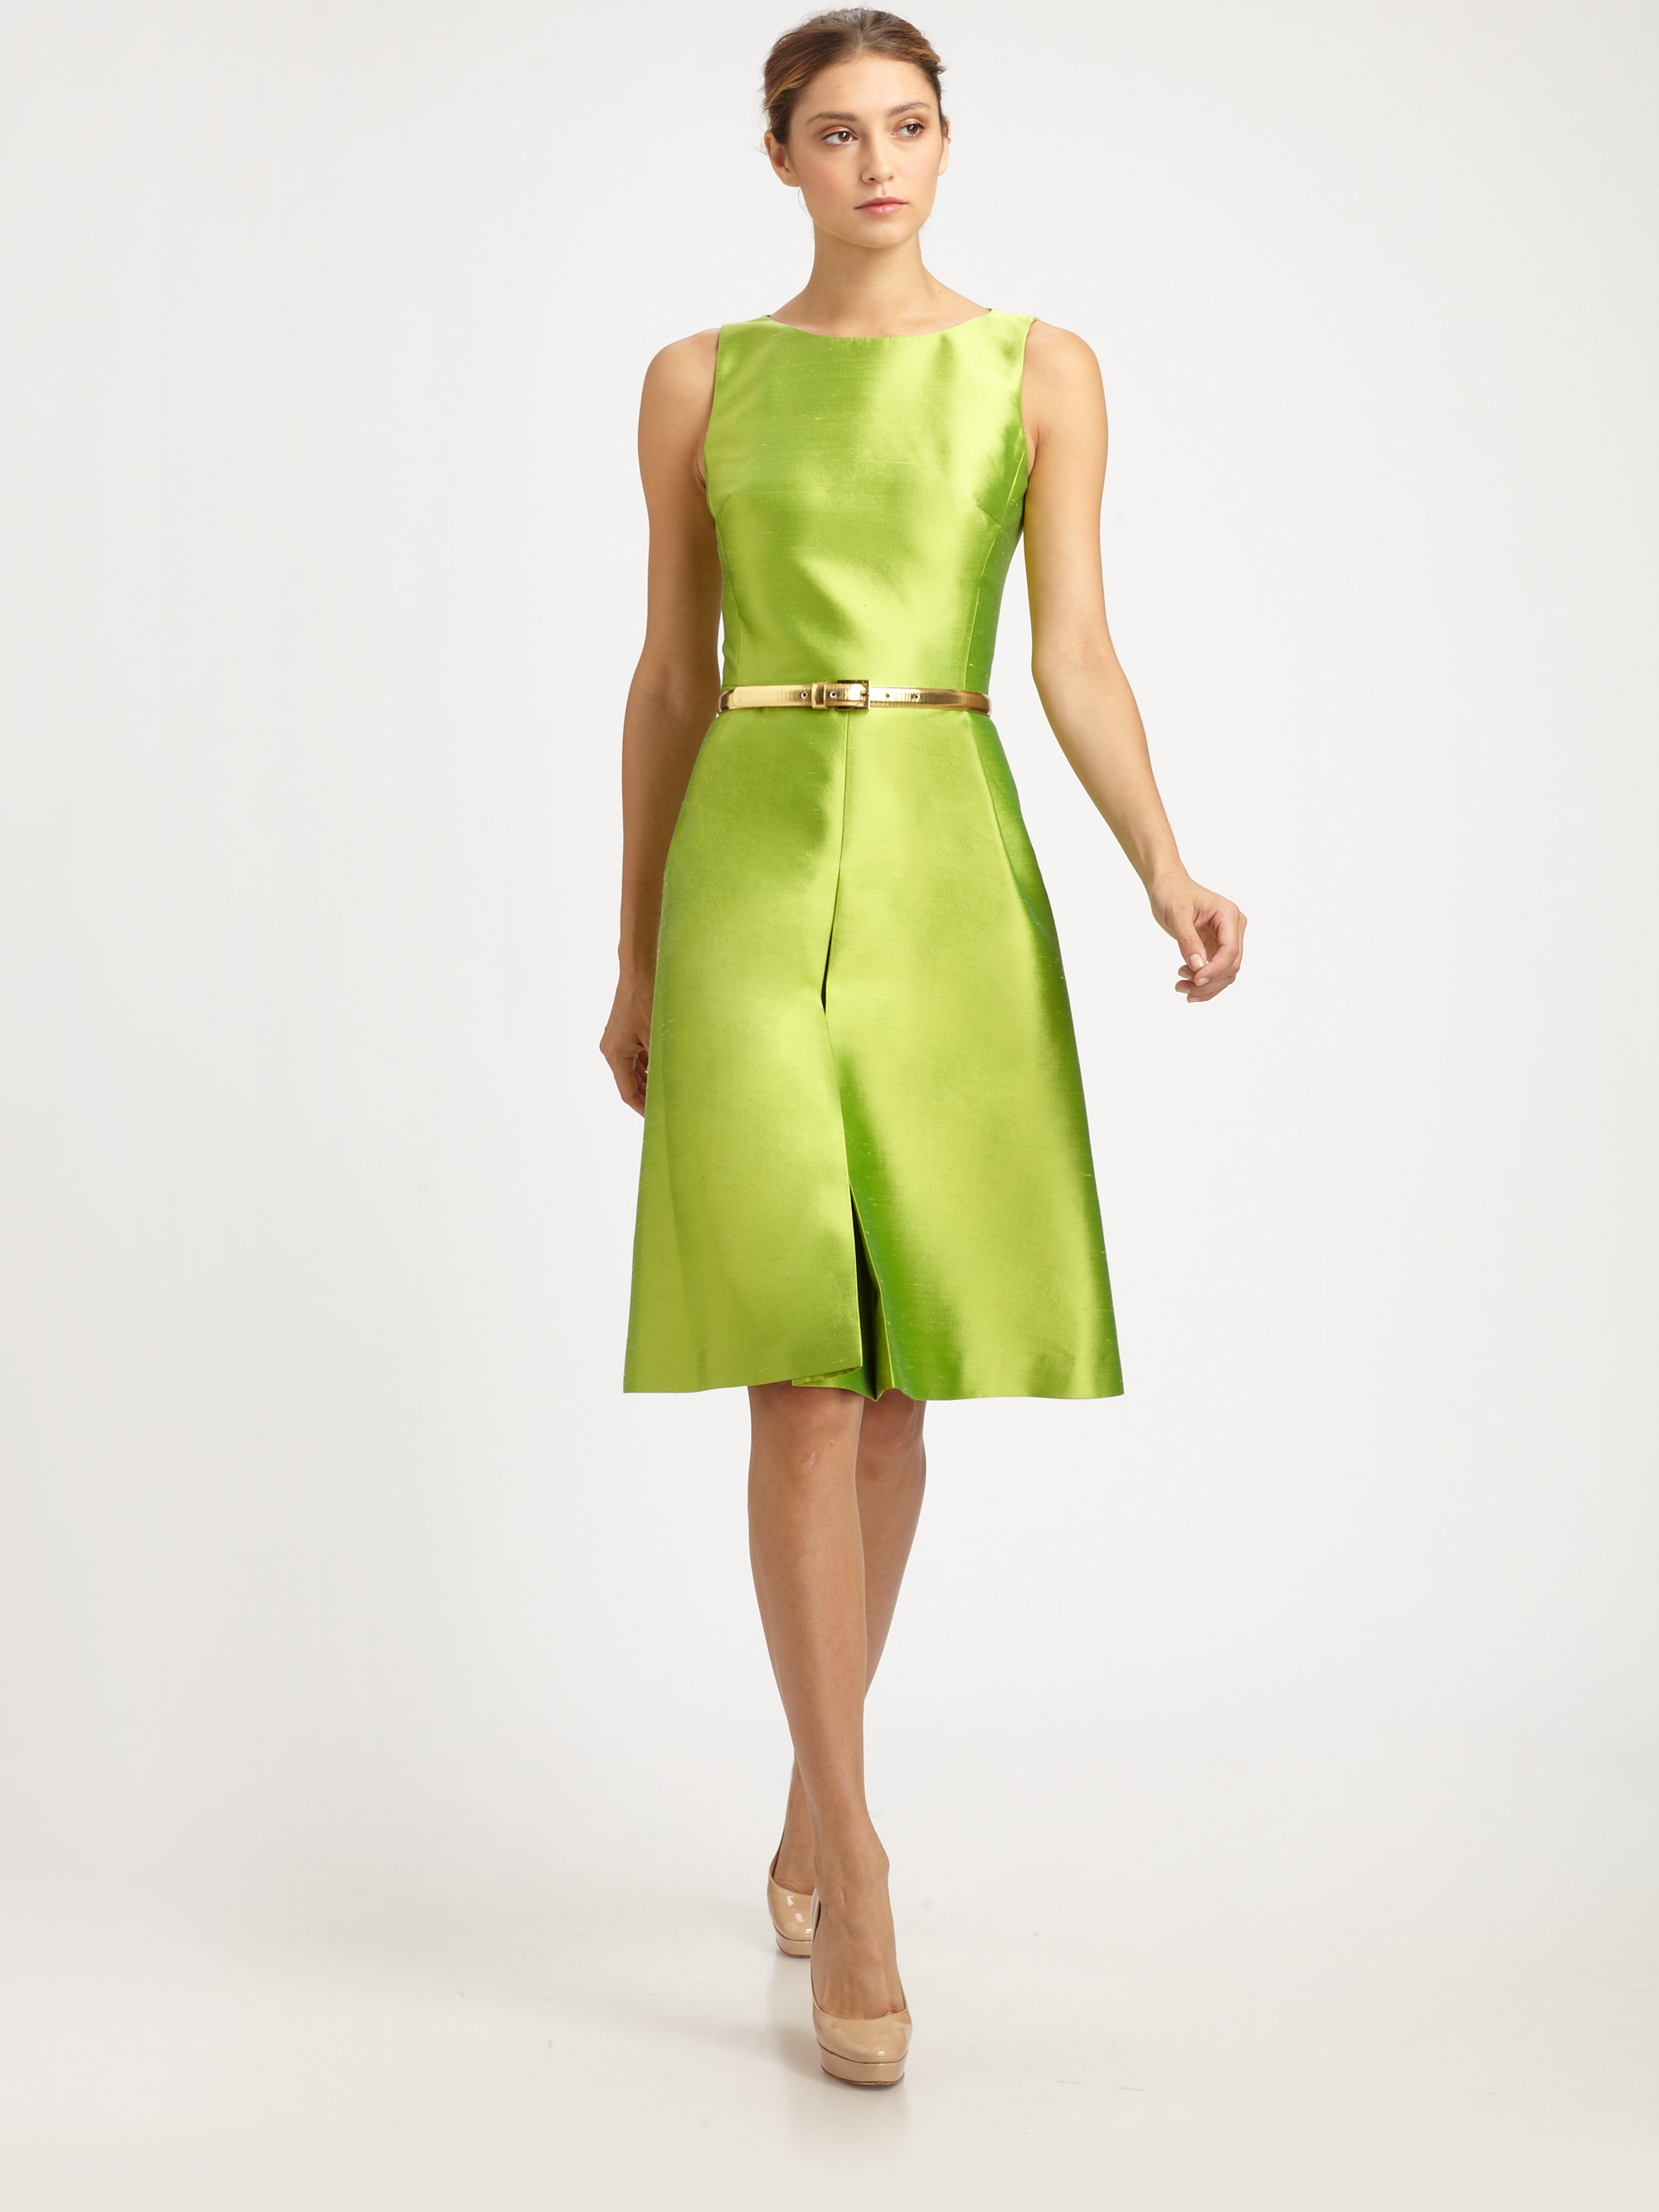 Lyst - Michael Kors Silk Shantung Dress in Green